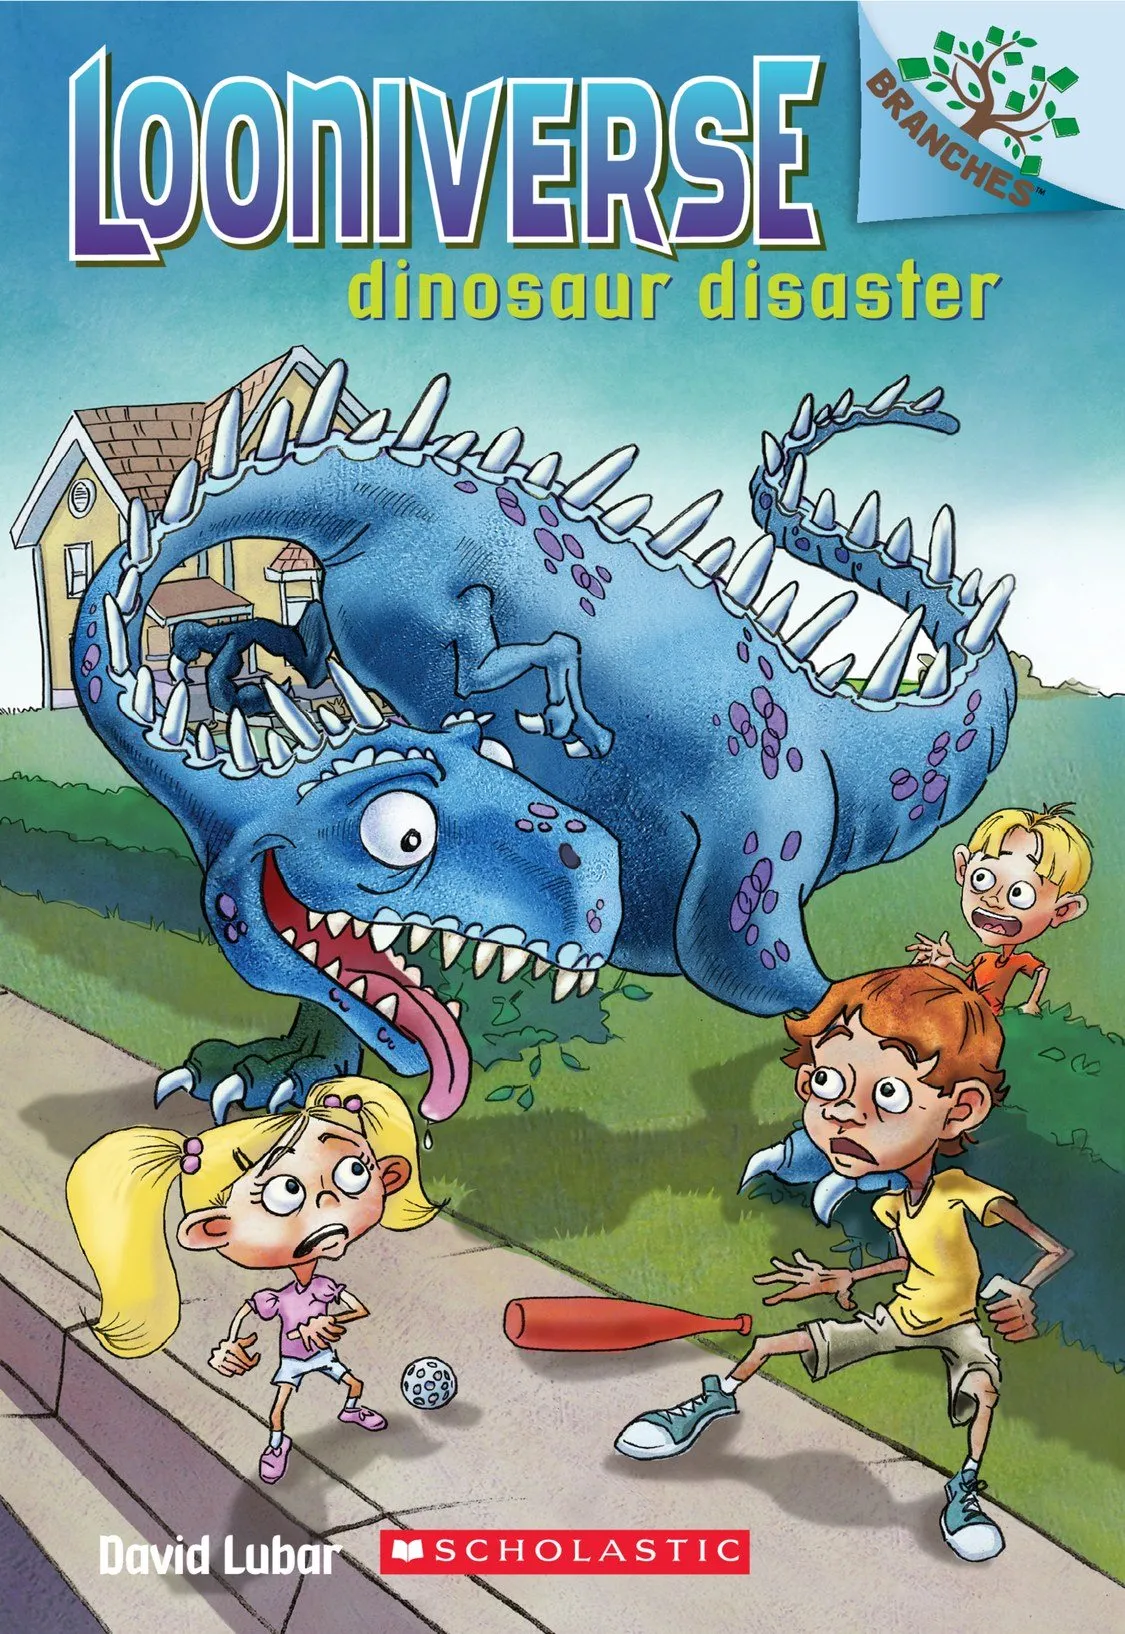 Dinosaur Disaster (Looniverse #3)